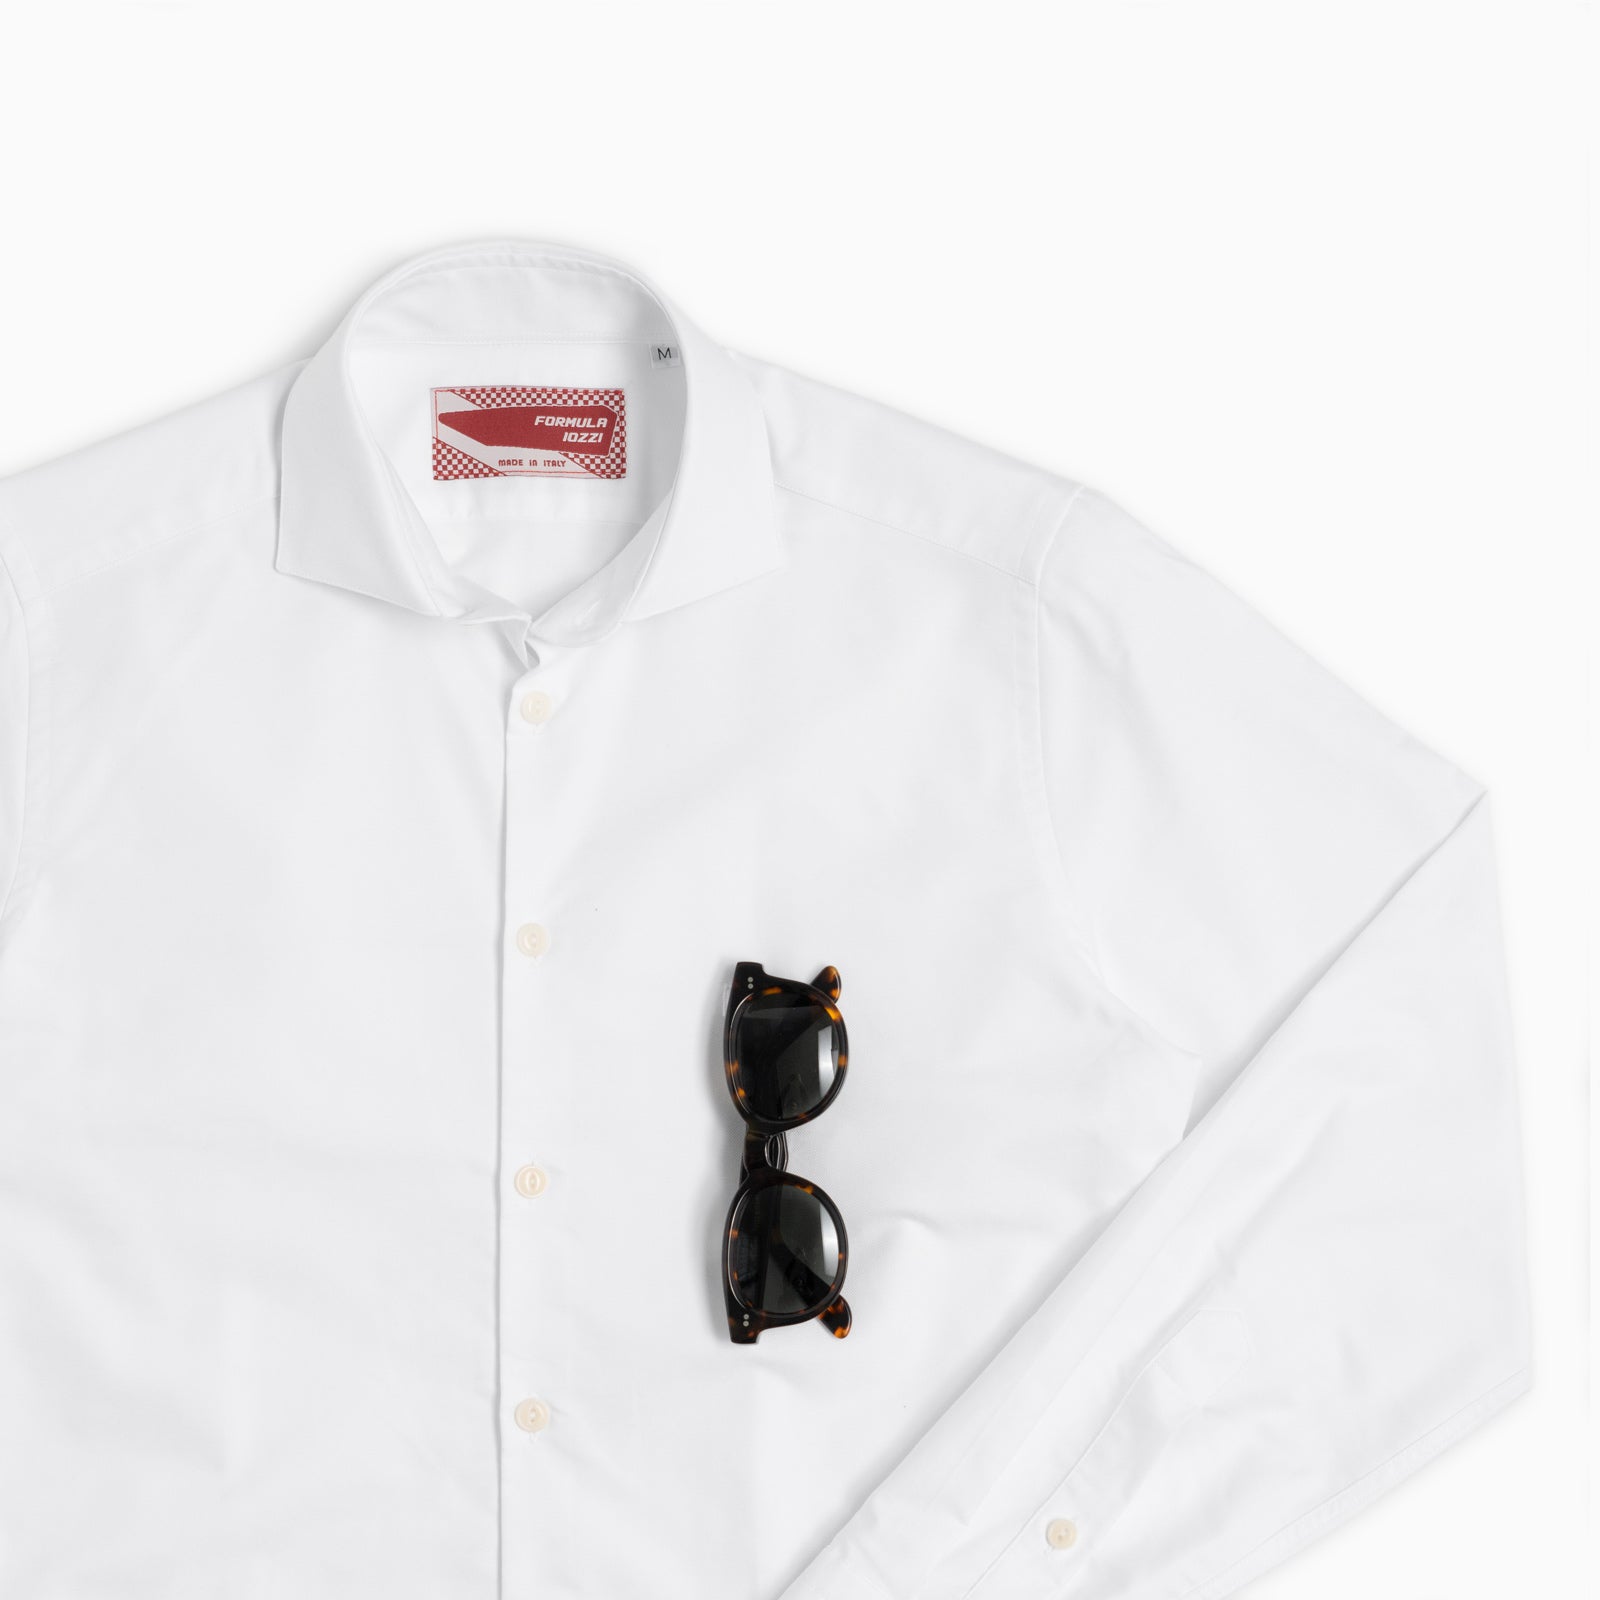 Camicia Classic Oxford bianca